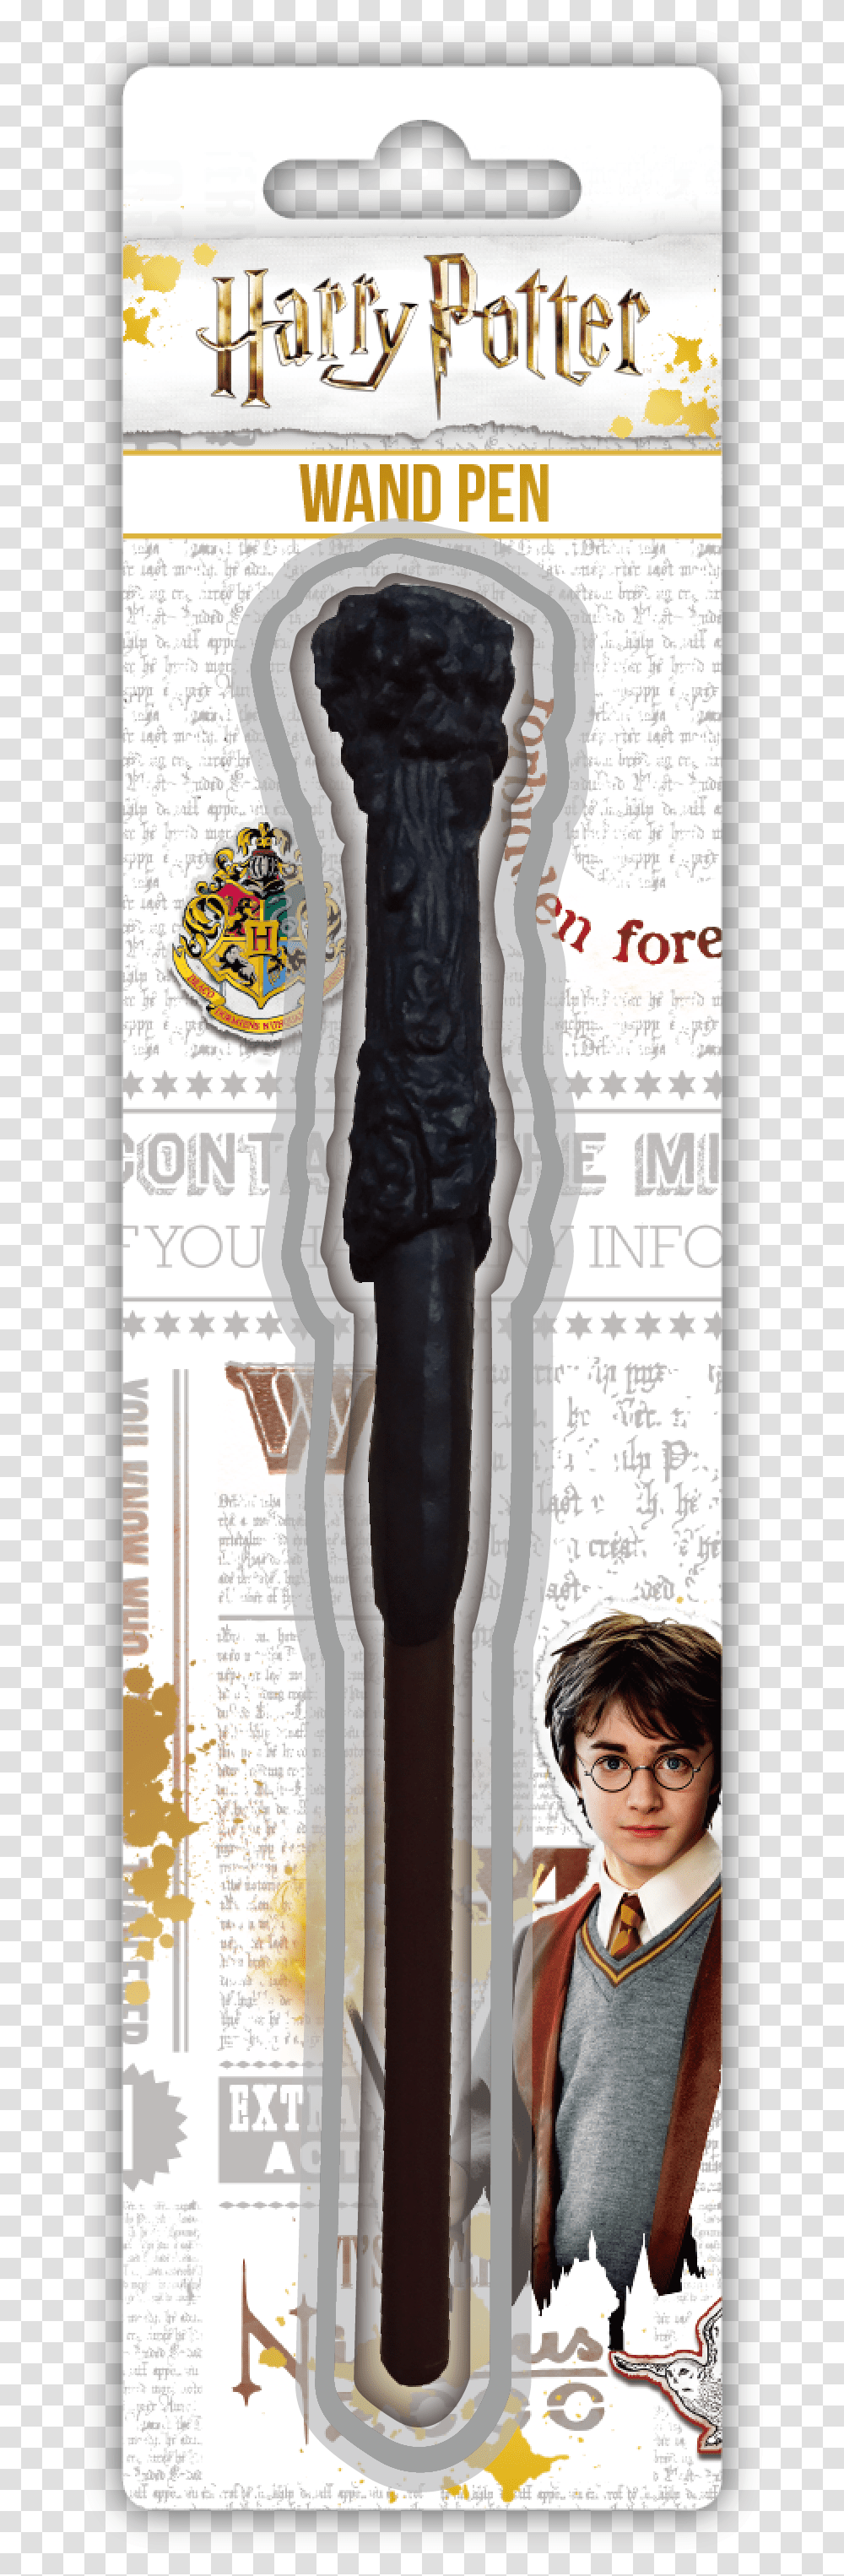 Harry Potter Wand Pen, Person, Architecture, Building, Tie Transparent Png